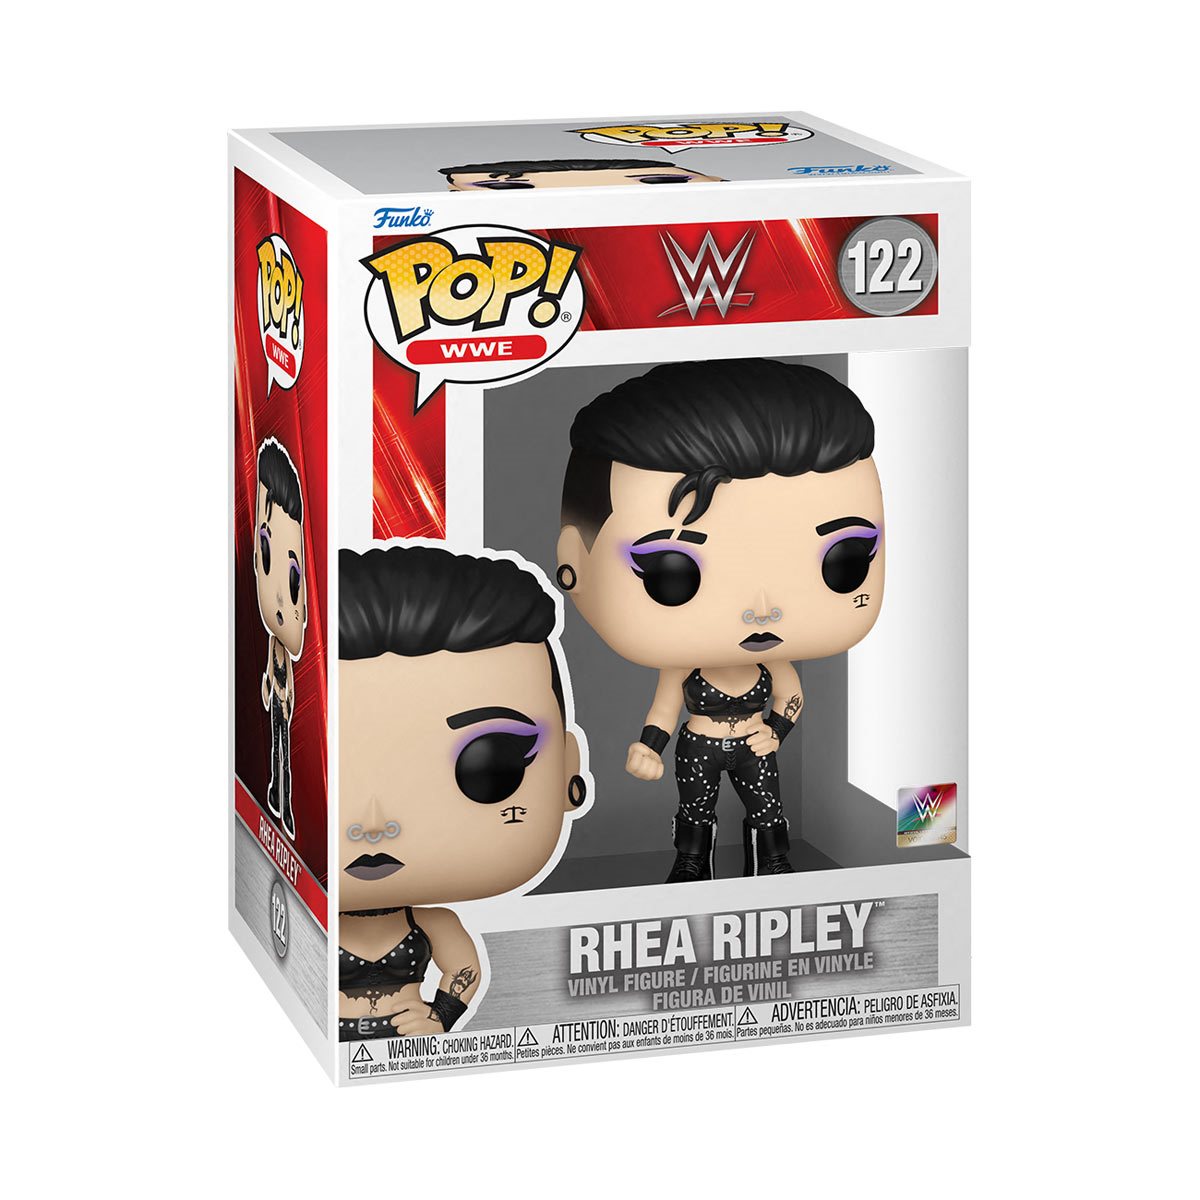 Rhea Ripley WWE Pop! Vinyl Figure